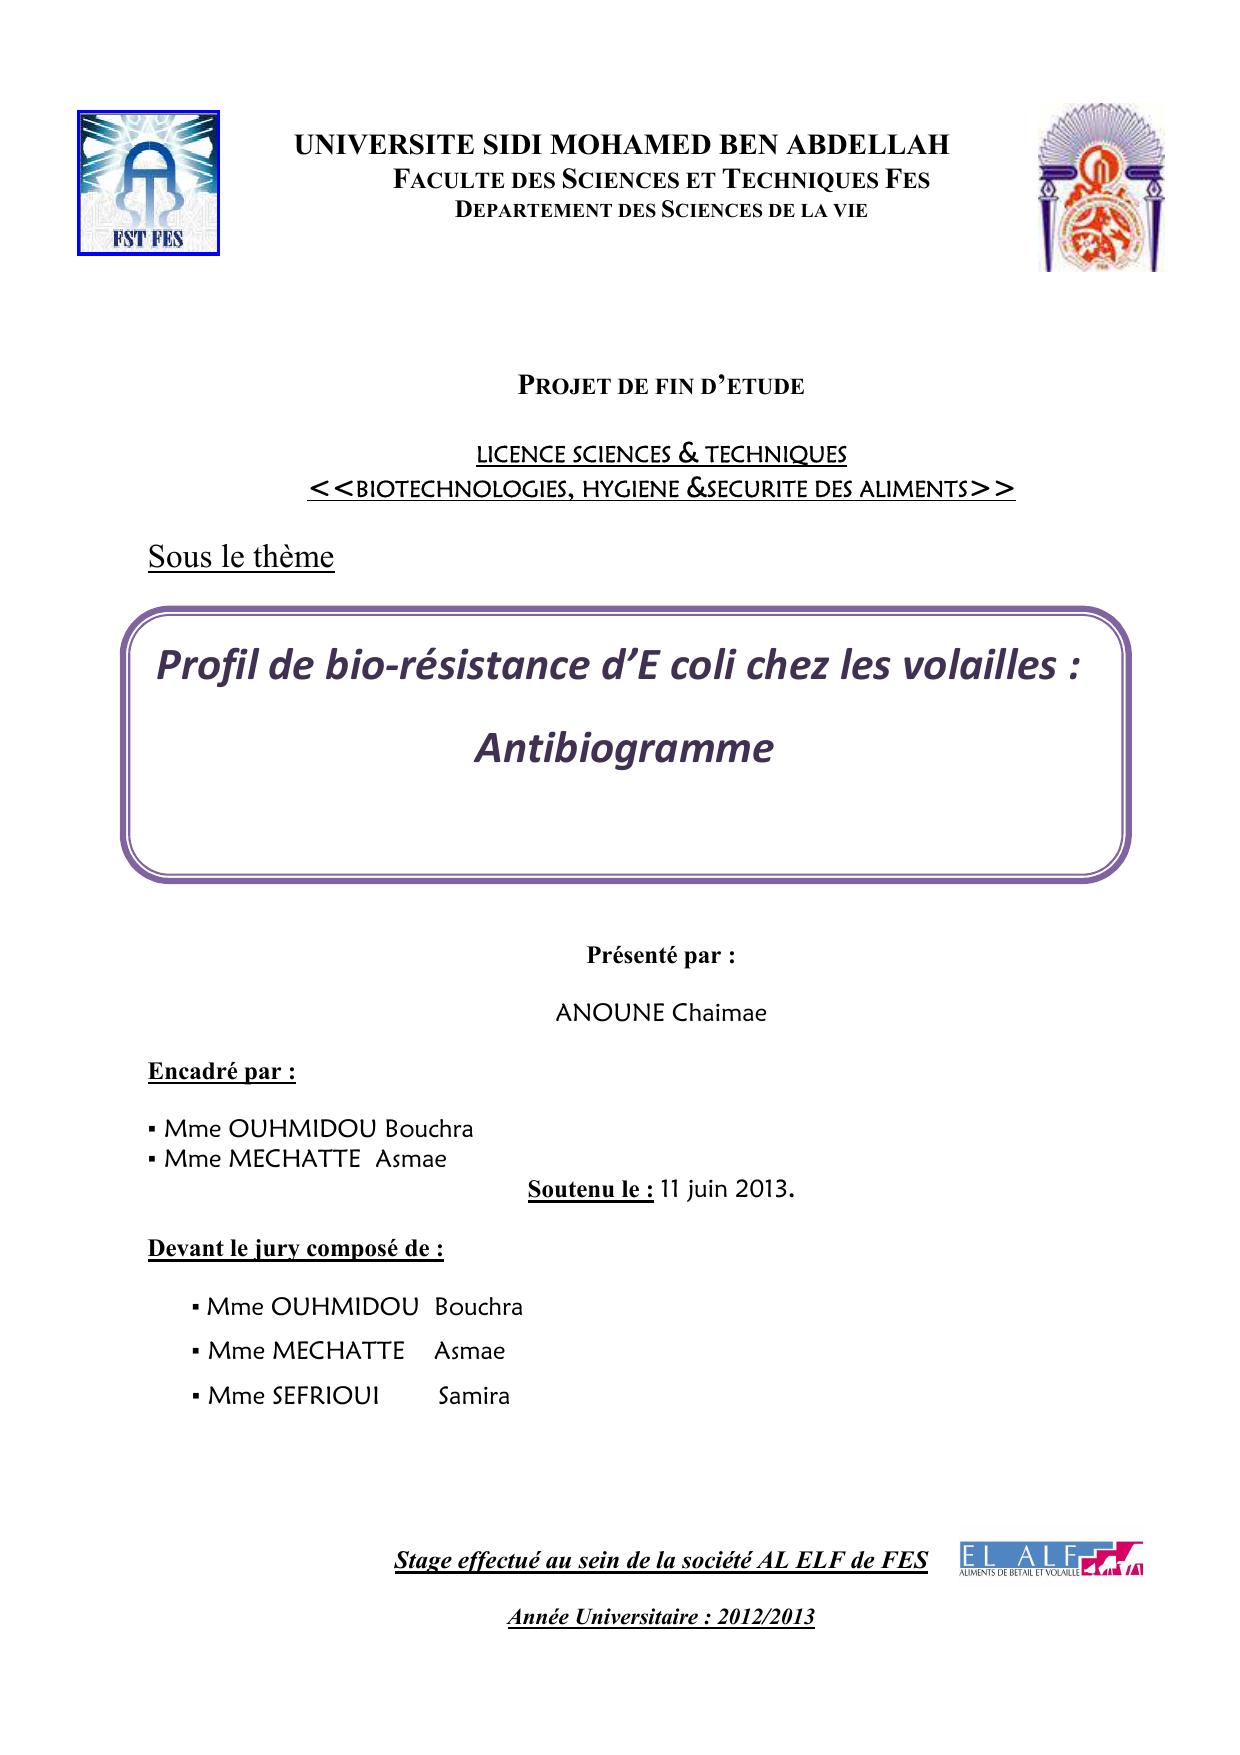 Profil de bio-résistance d’E coli chez les volailles : Antibiogramme